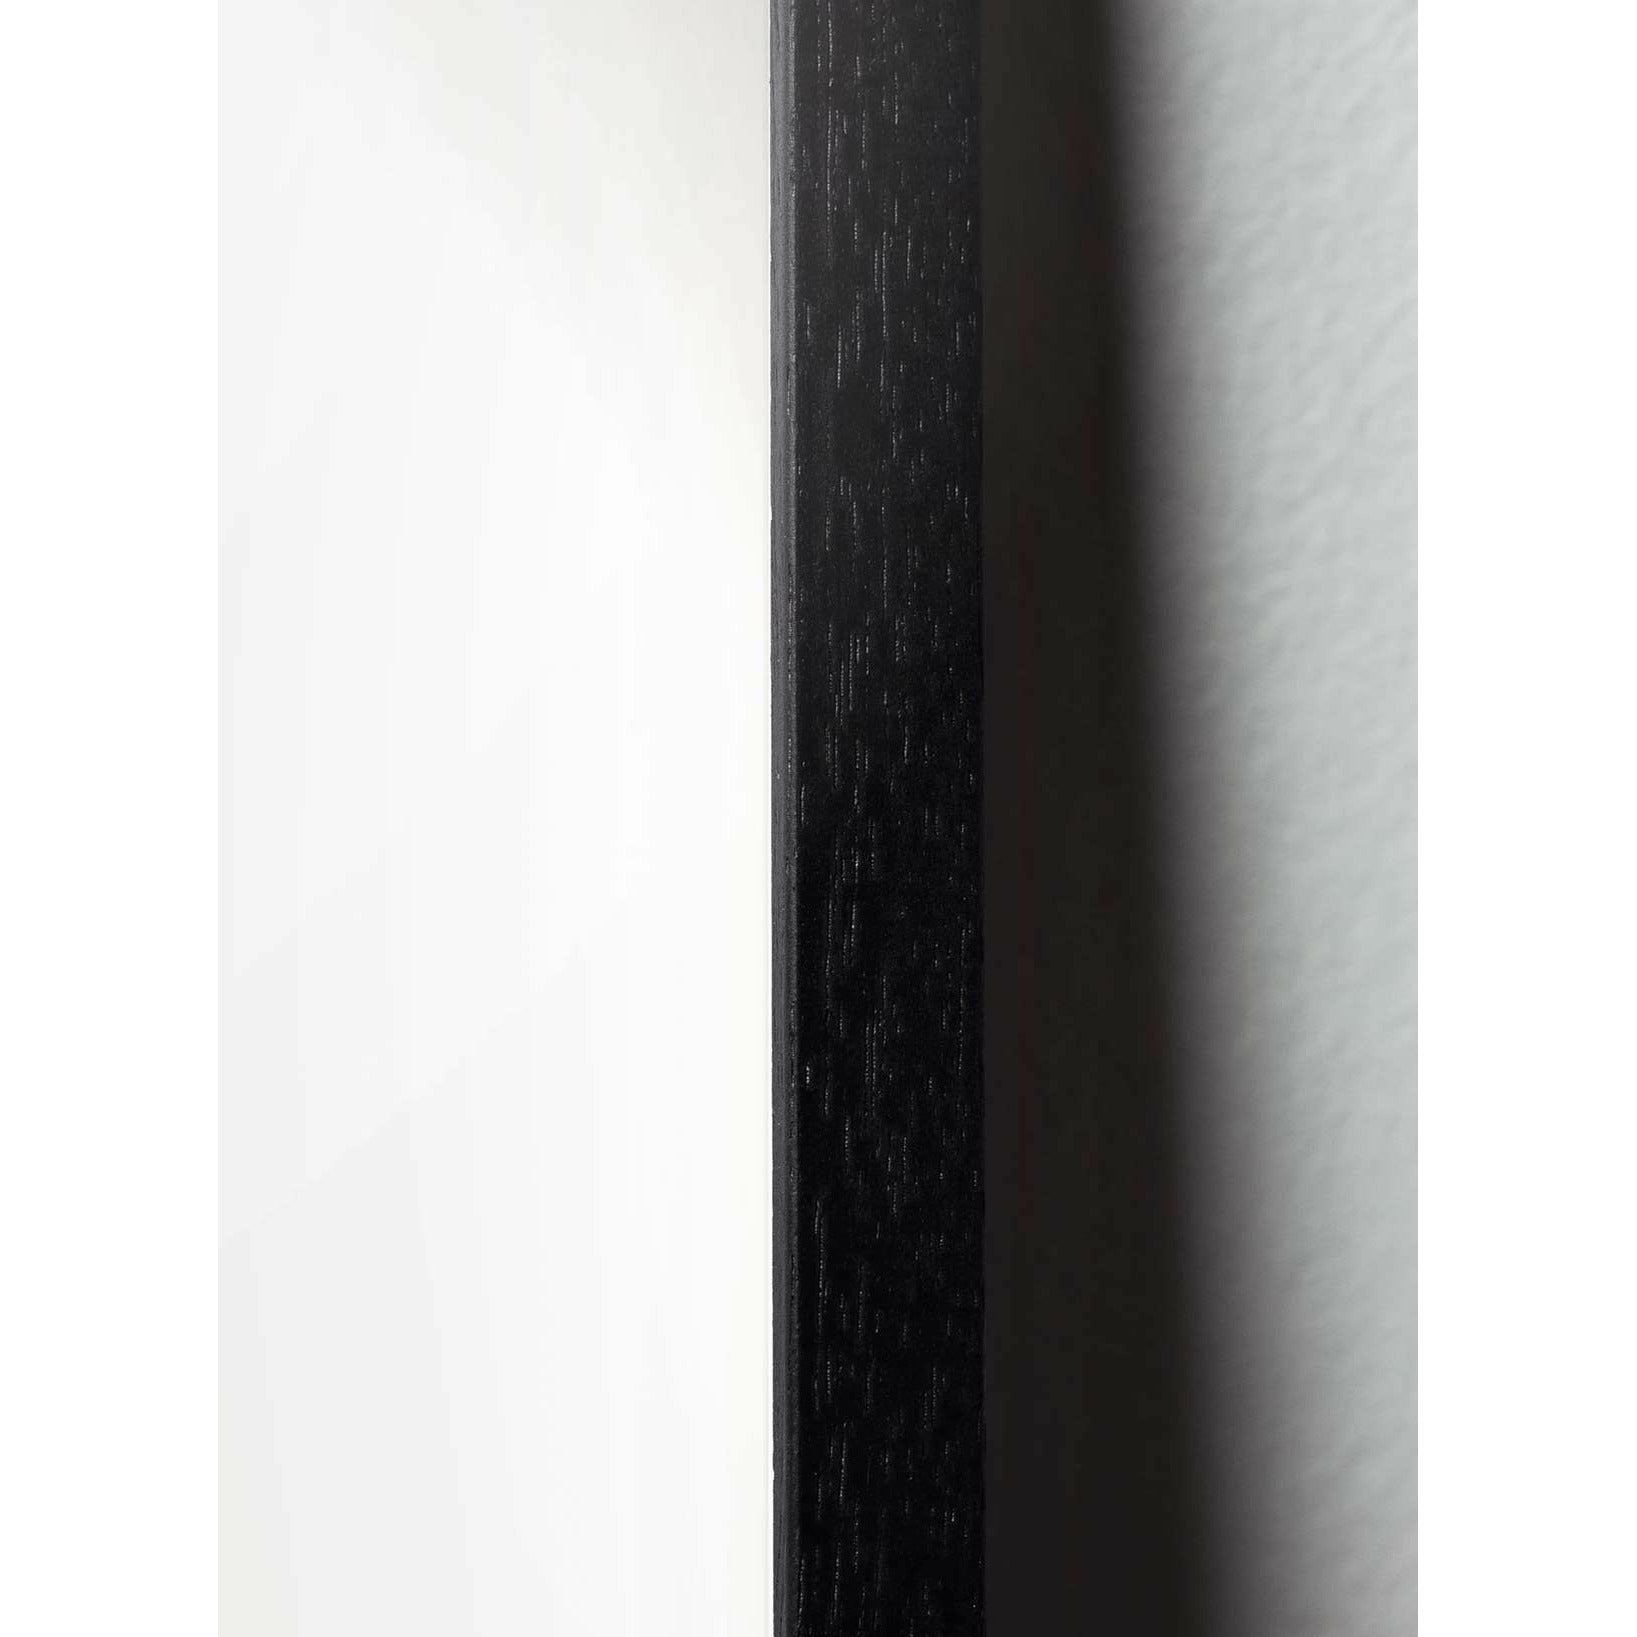 Plakát vejce z mozku, rám vyrobený z černého lakovaného dřeva 50x70 cm, hnědá